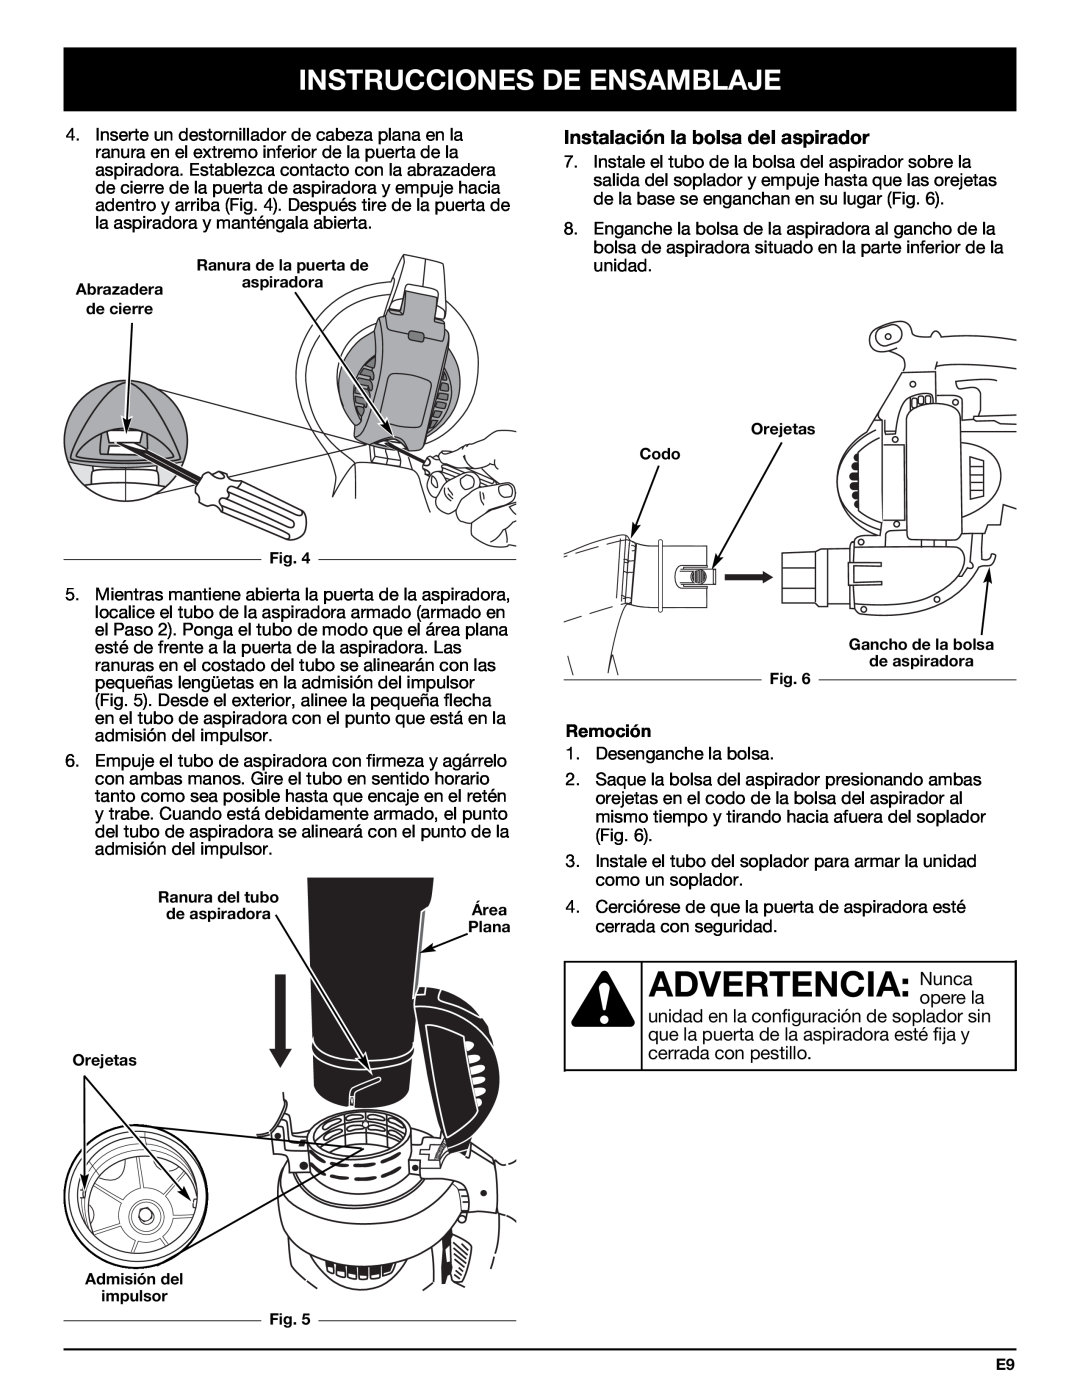 Bolens YM320BV manual ADVERTENCIA:Nunca, Instalación la bolsa del aspirador, Instrucciones De Ensamblaje, Remoción 